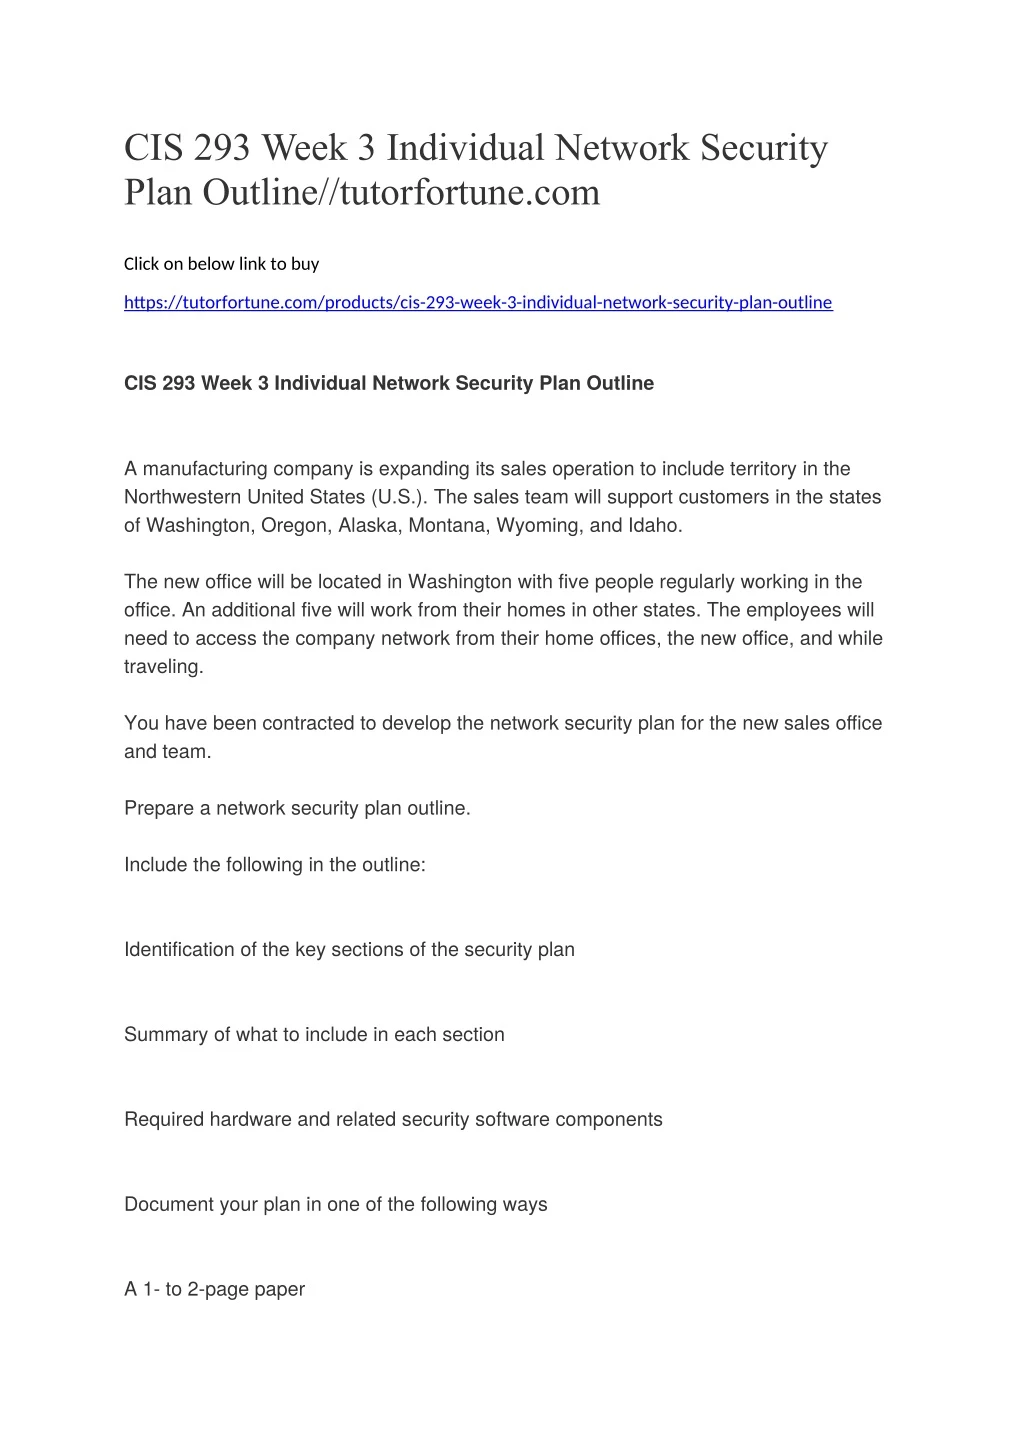 cis 293 week 3 individual network security plan